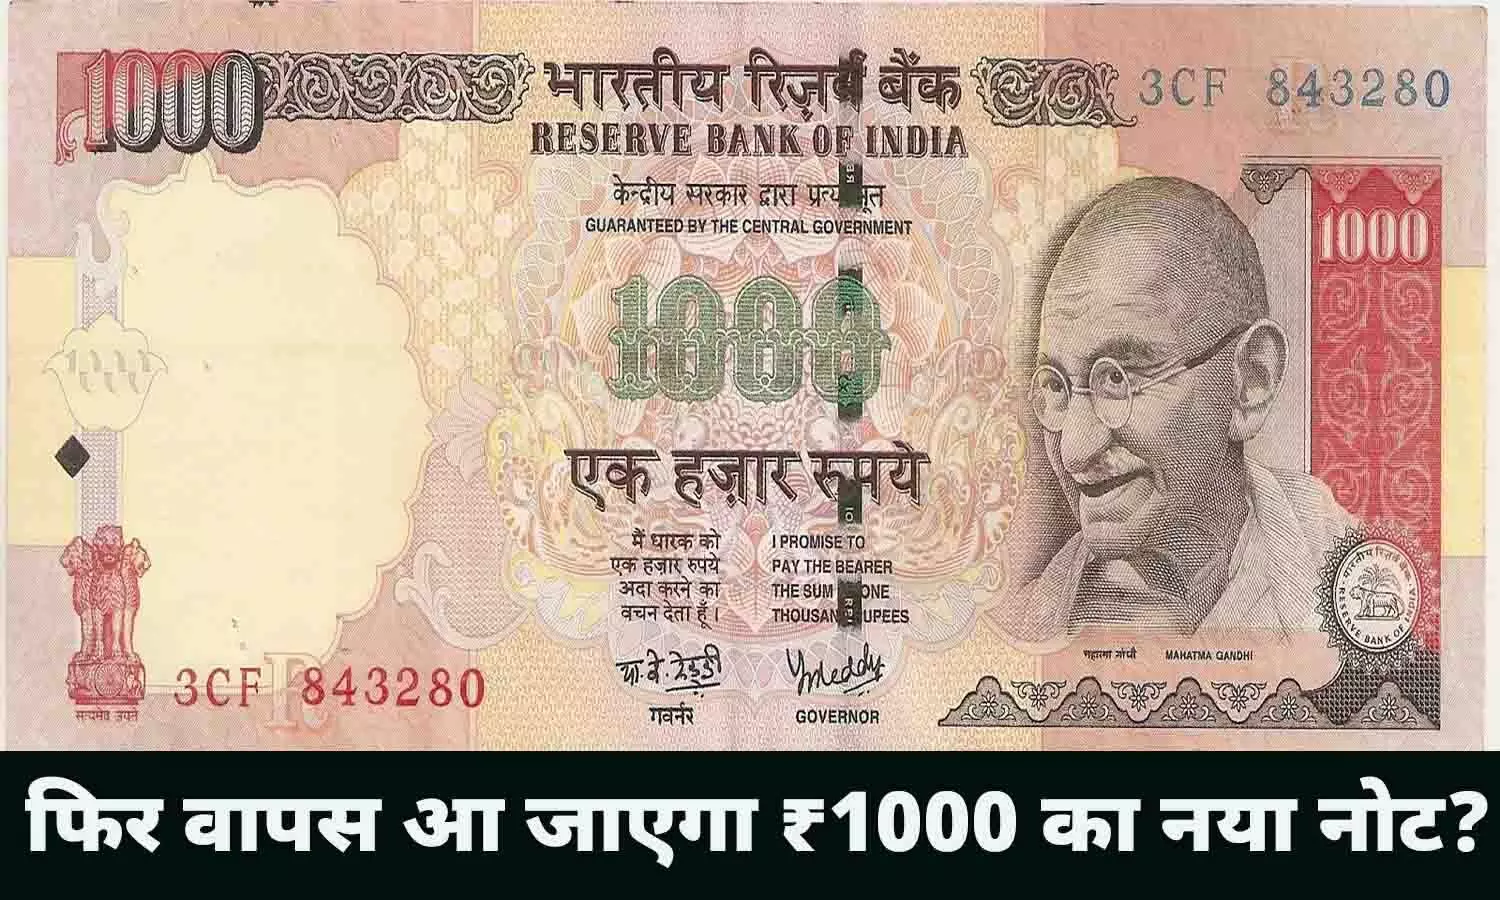 1000 Rupees Note: 2016 के बाद फिर आने वाले है ₹1000 के नोट, RBI ने दिया जानकारी